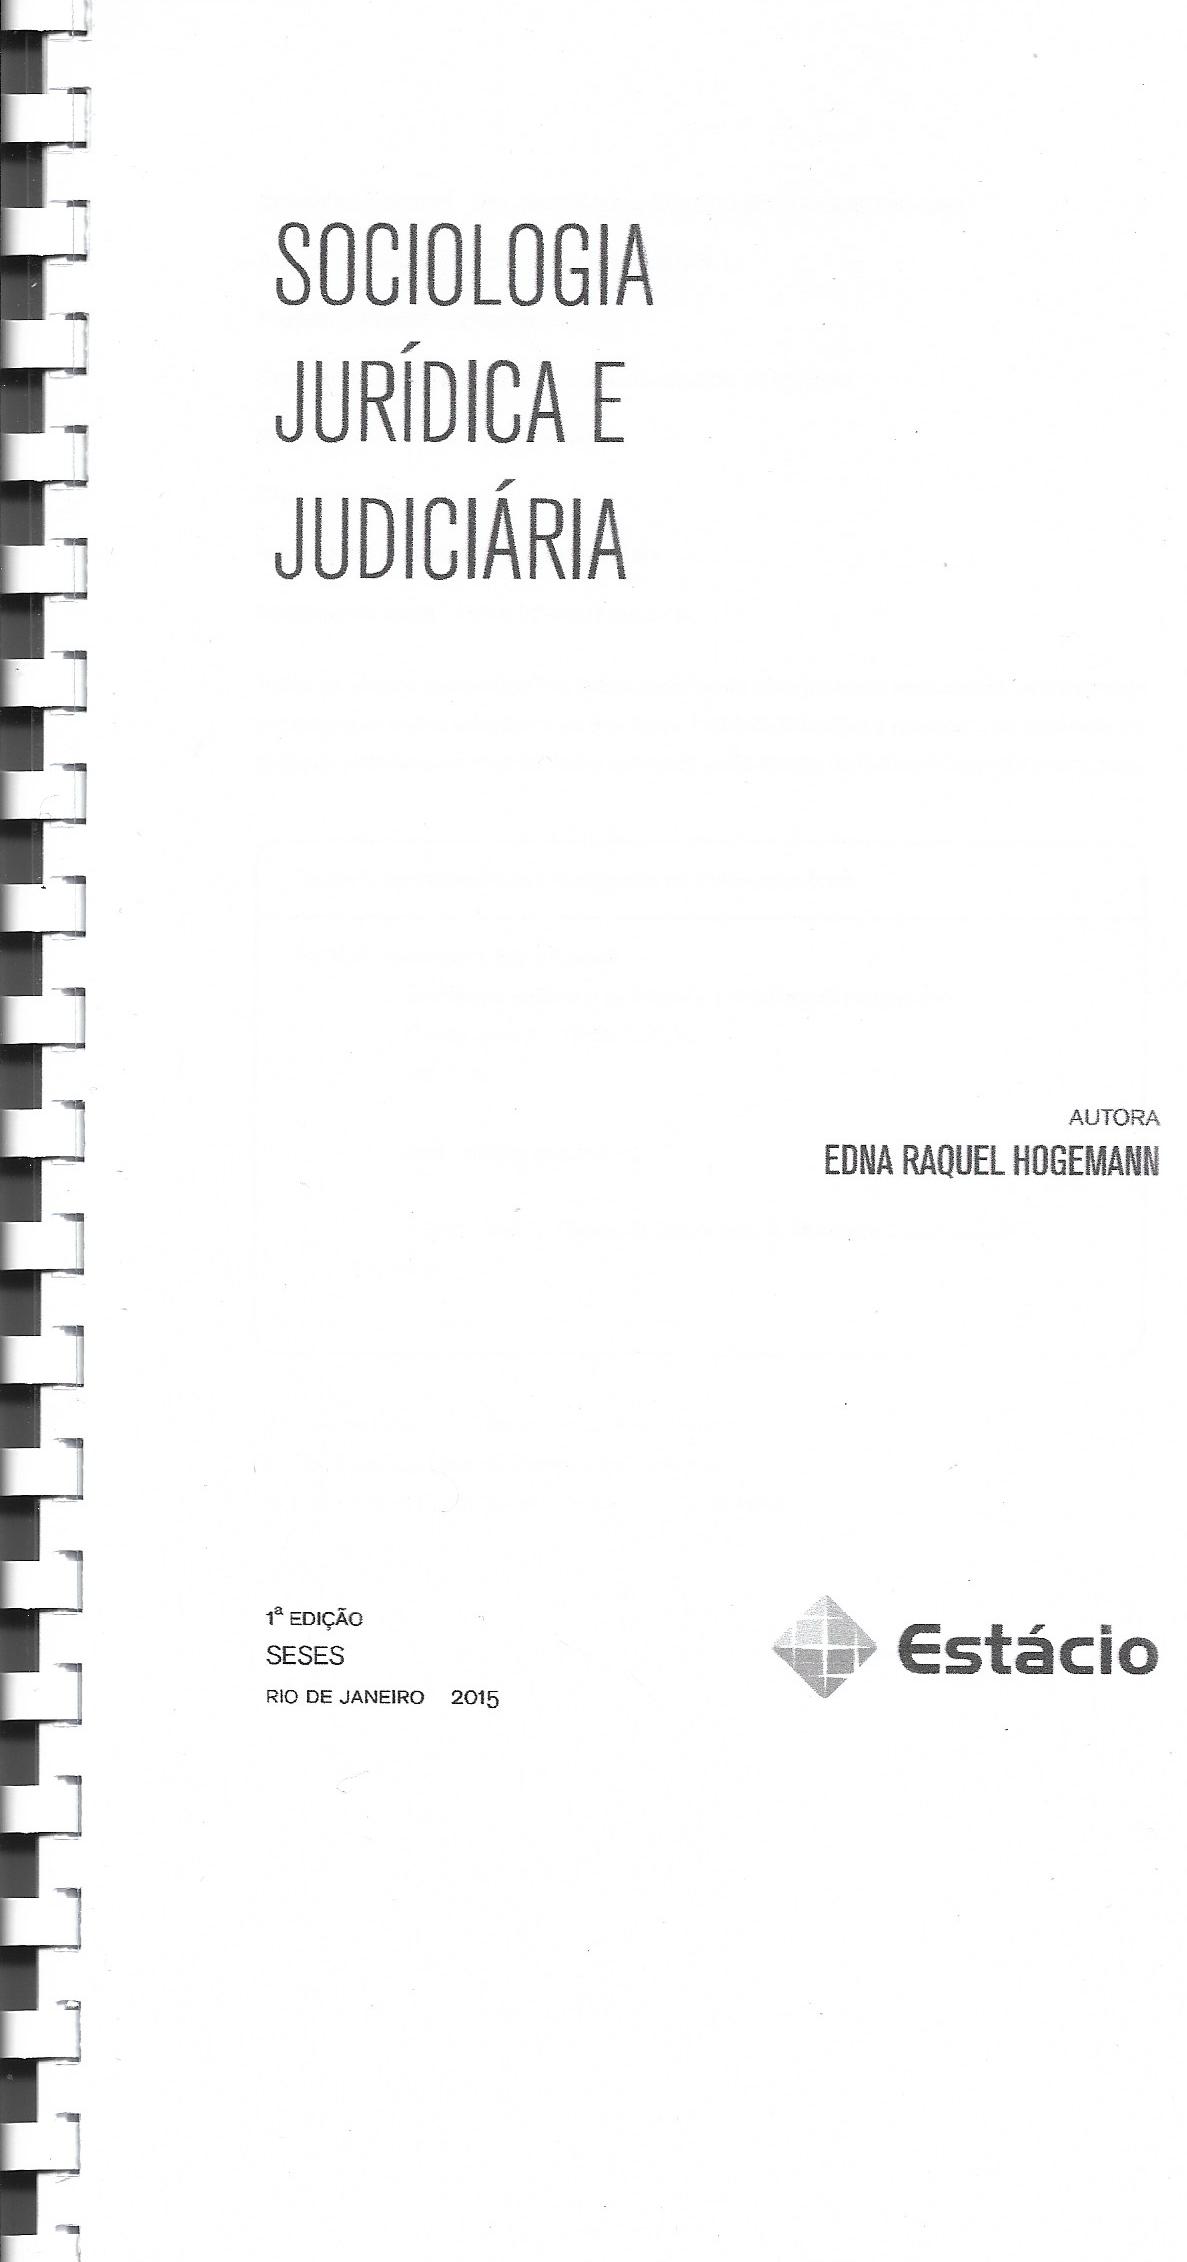   Sociologia Jurídica e Judiciária 